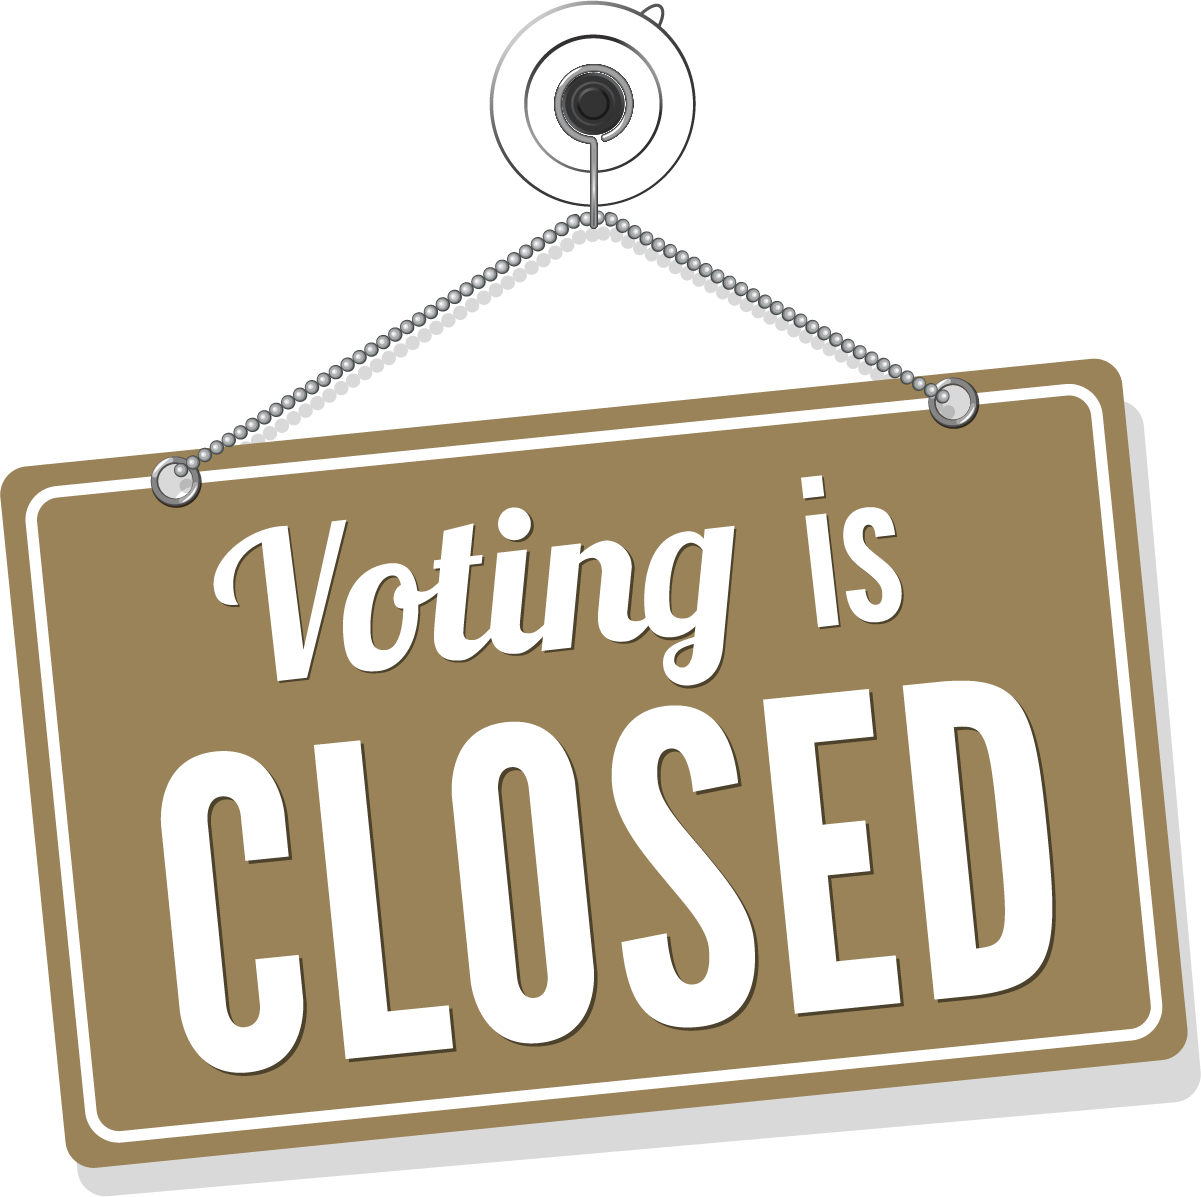 Voting Closed